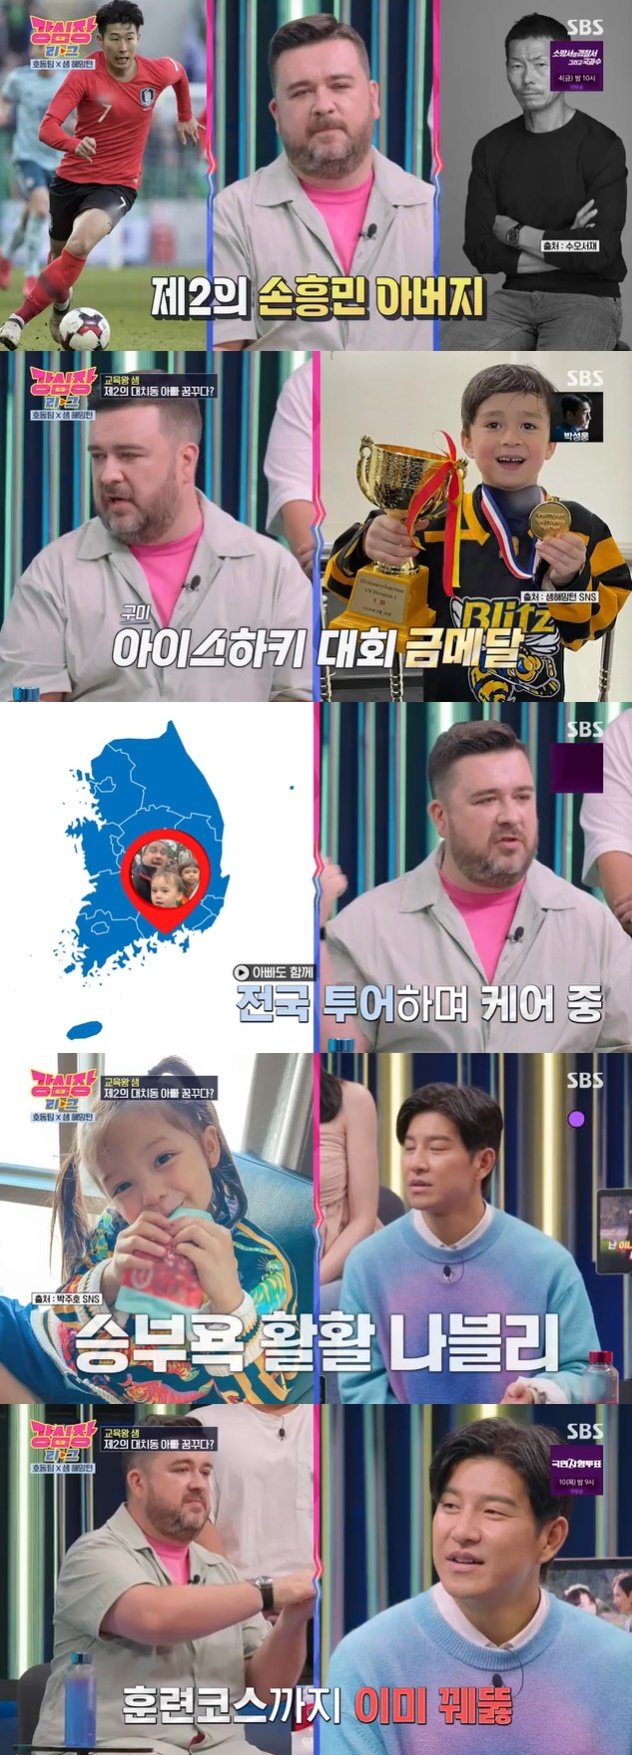 SBS '강심장 리그' 캡처